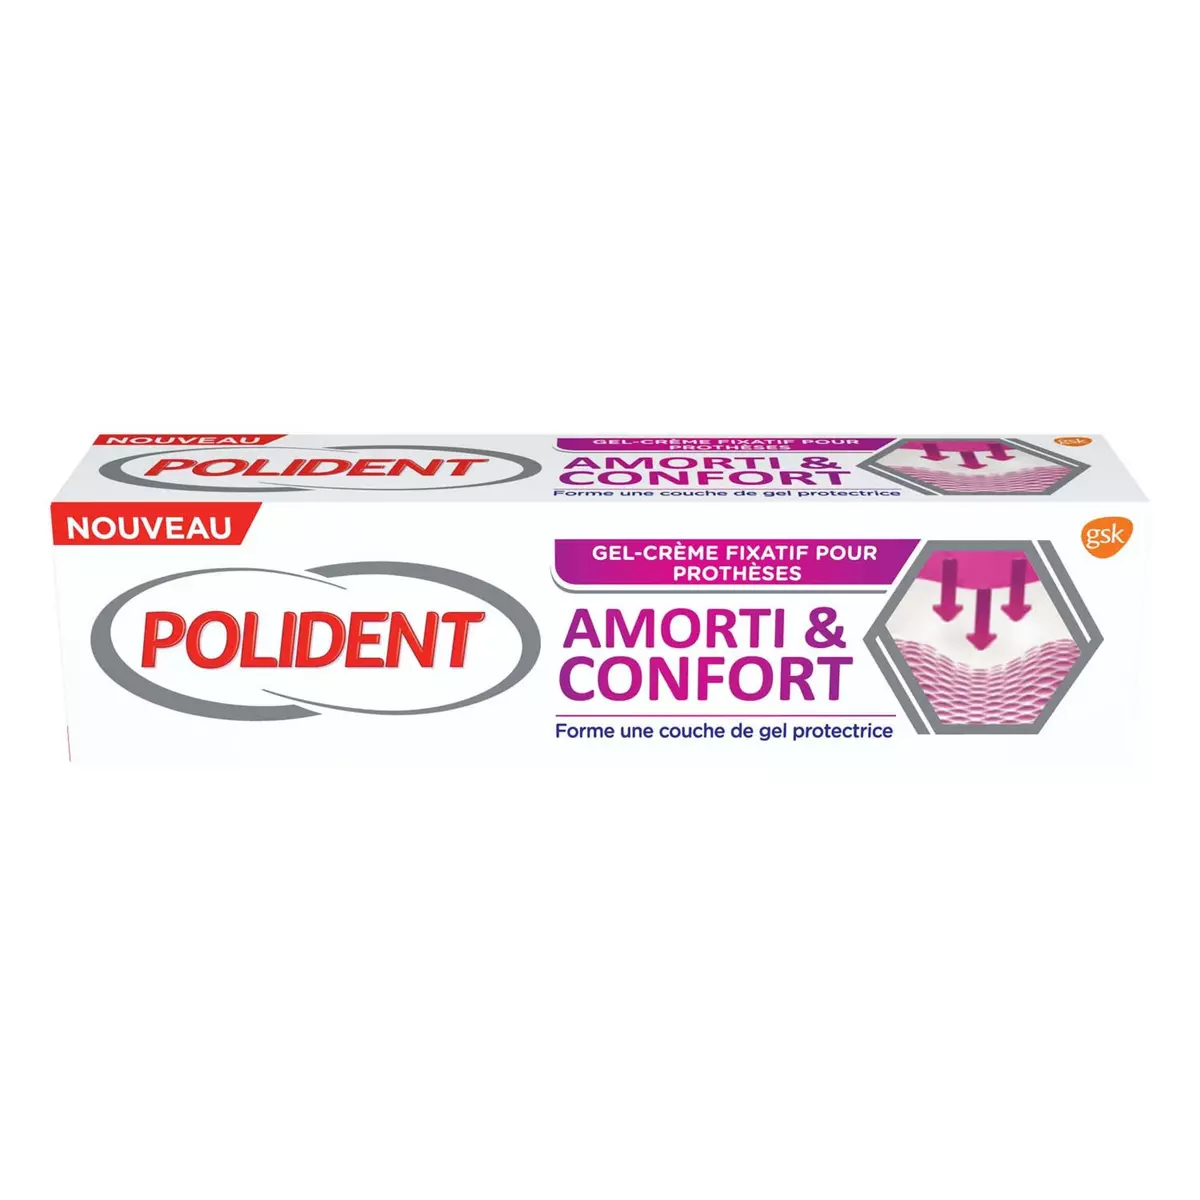 POLIDENT Gel-crème fixatif pour prothèses dentaires amorti & confort 40g